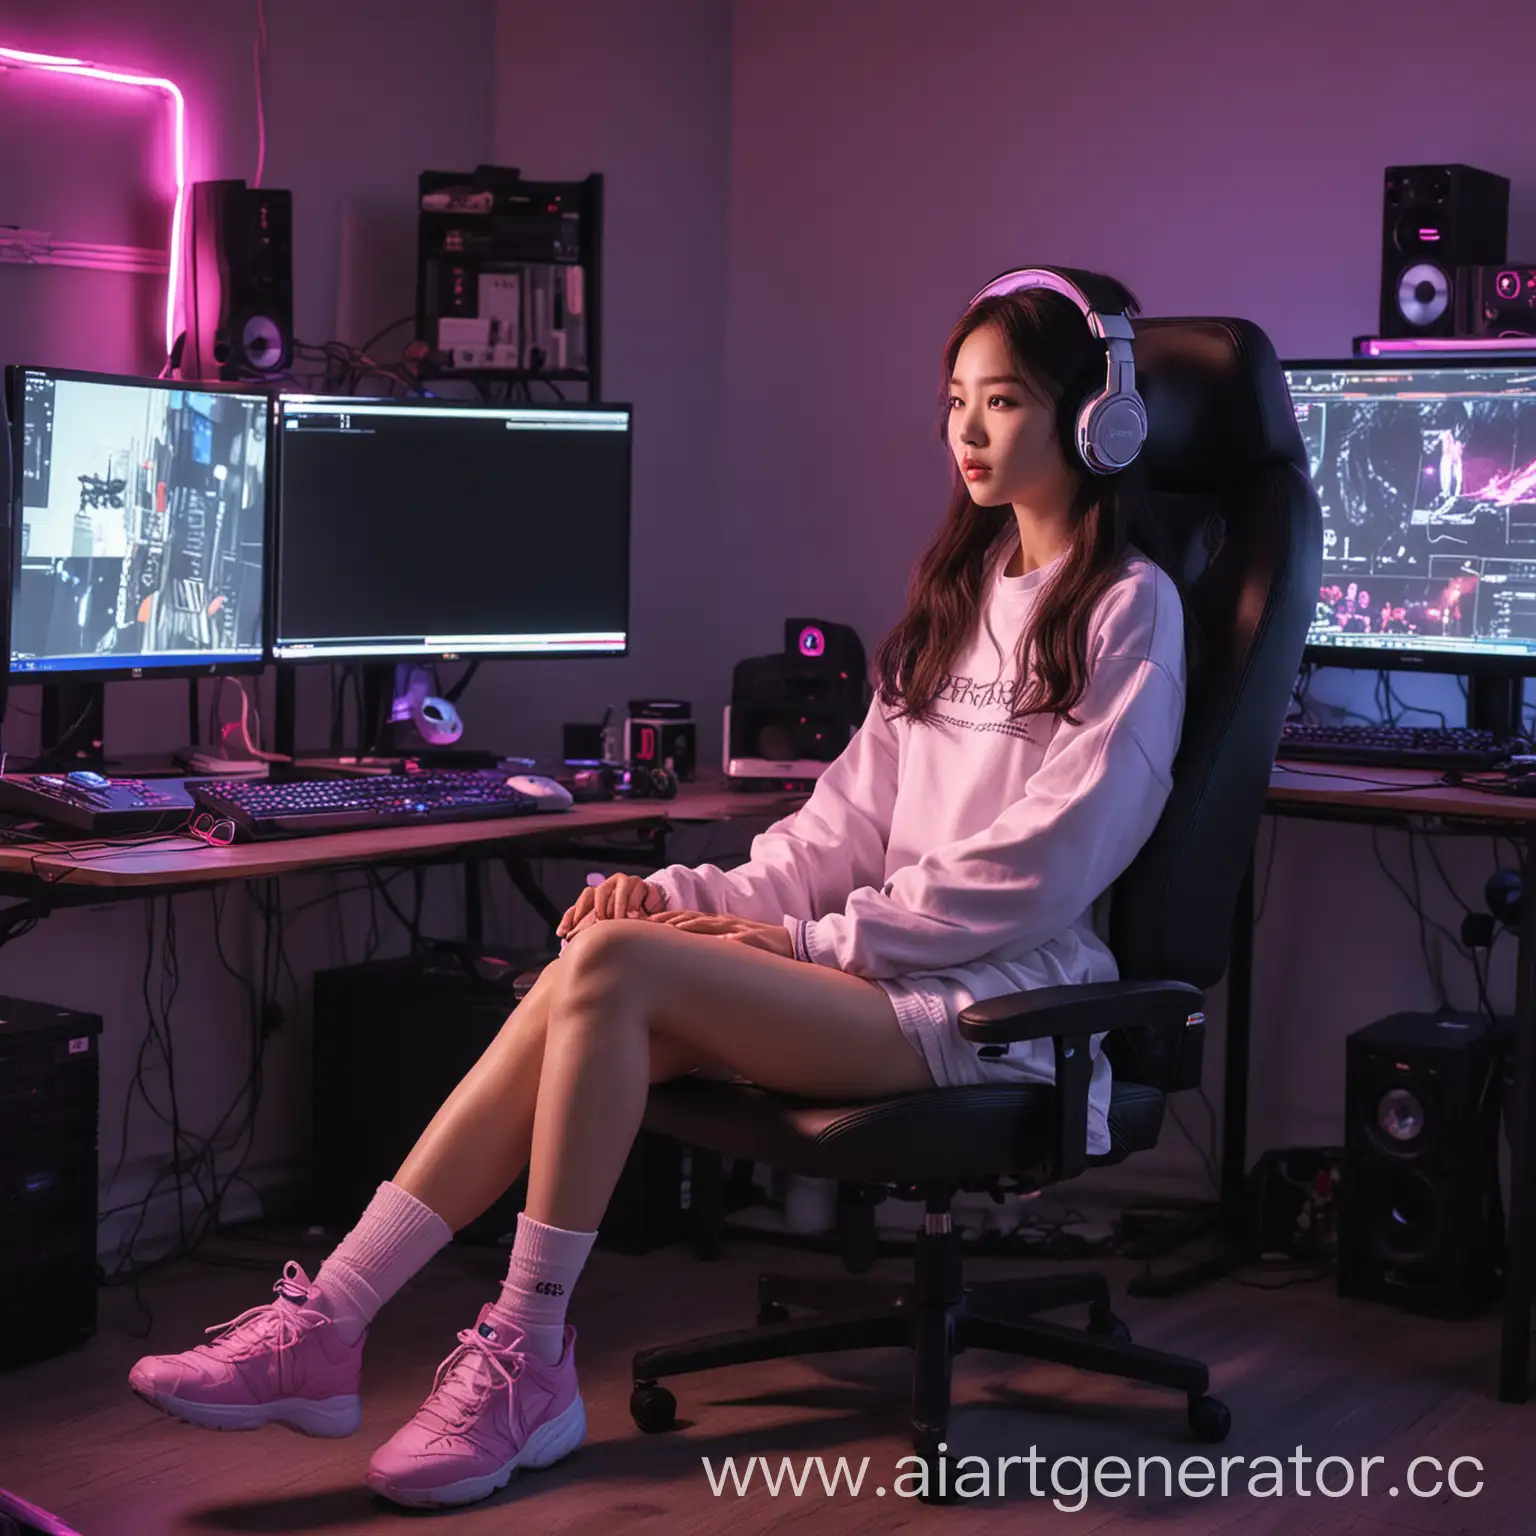 Neon-Gaming-Setup-Korean-Girl-Listening-to-Music-in-Socks